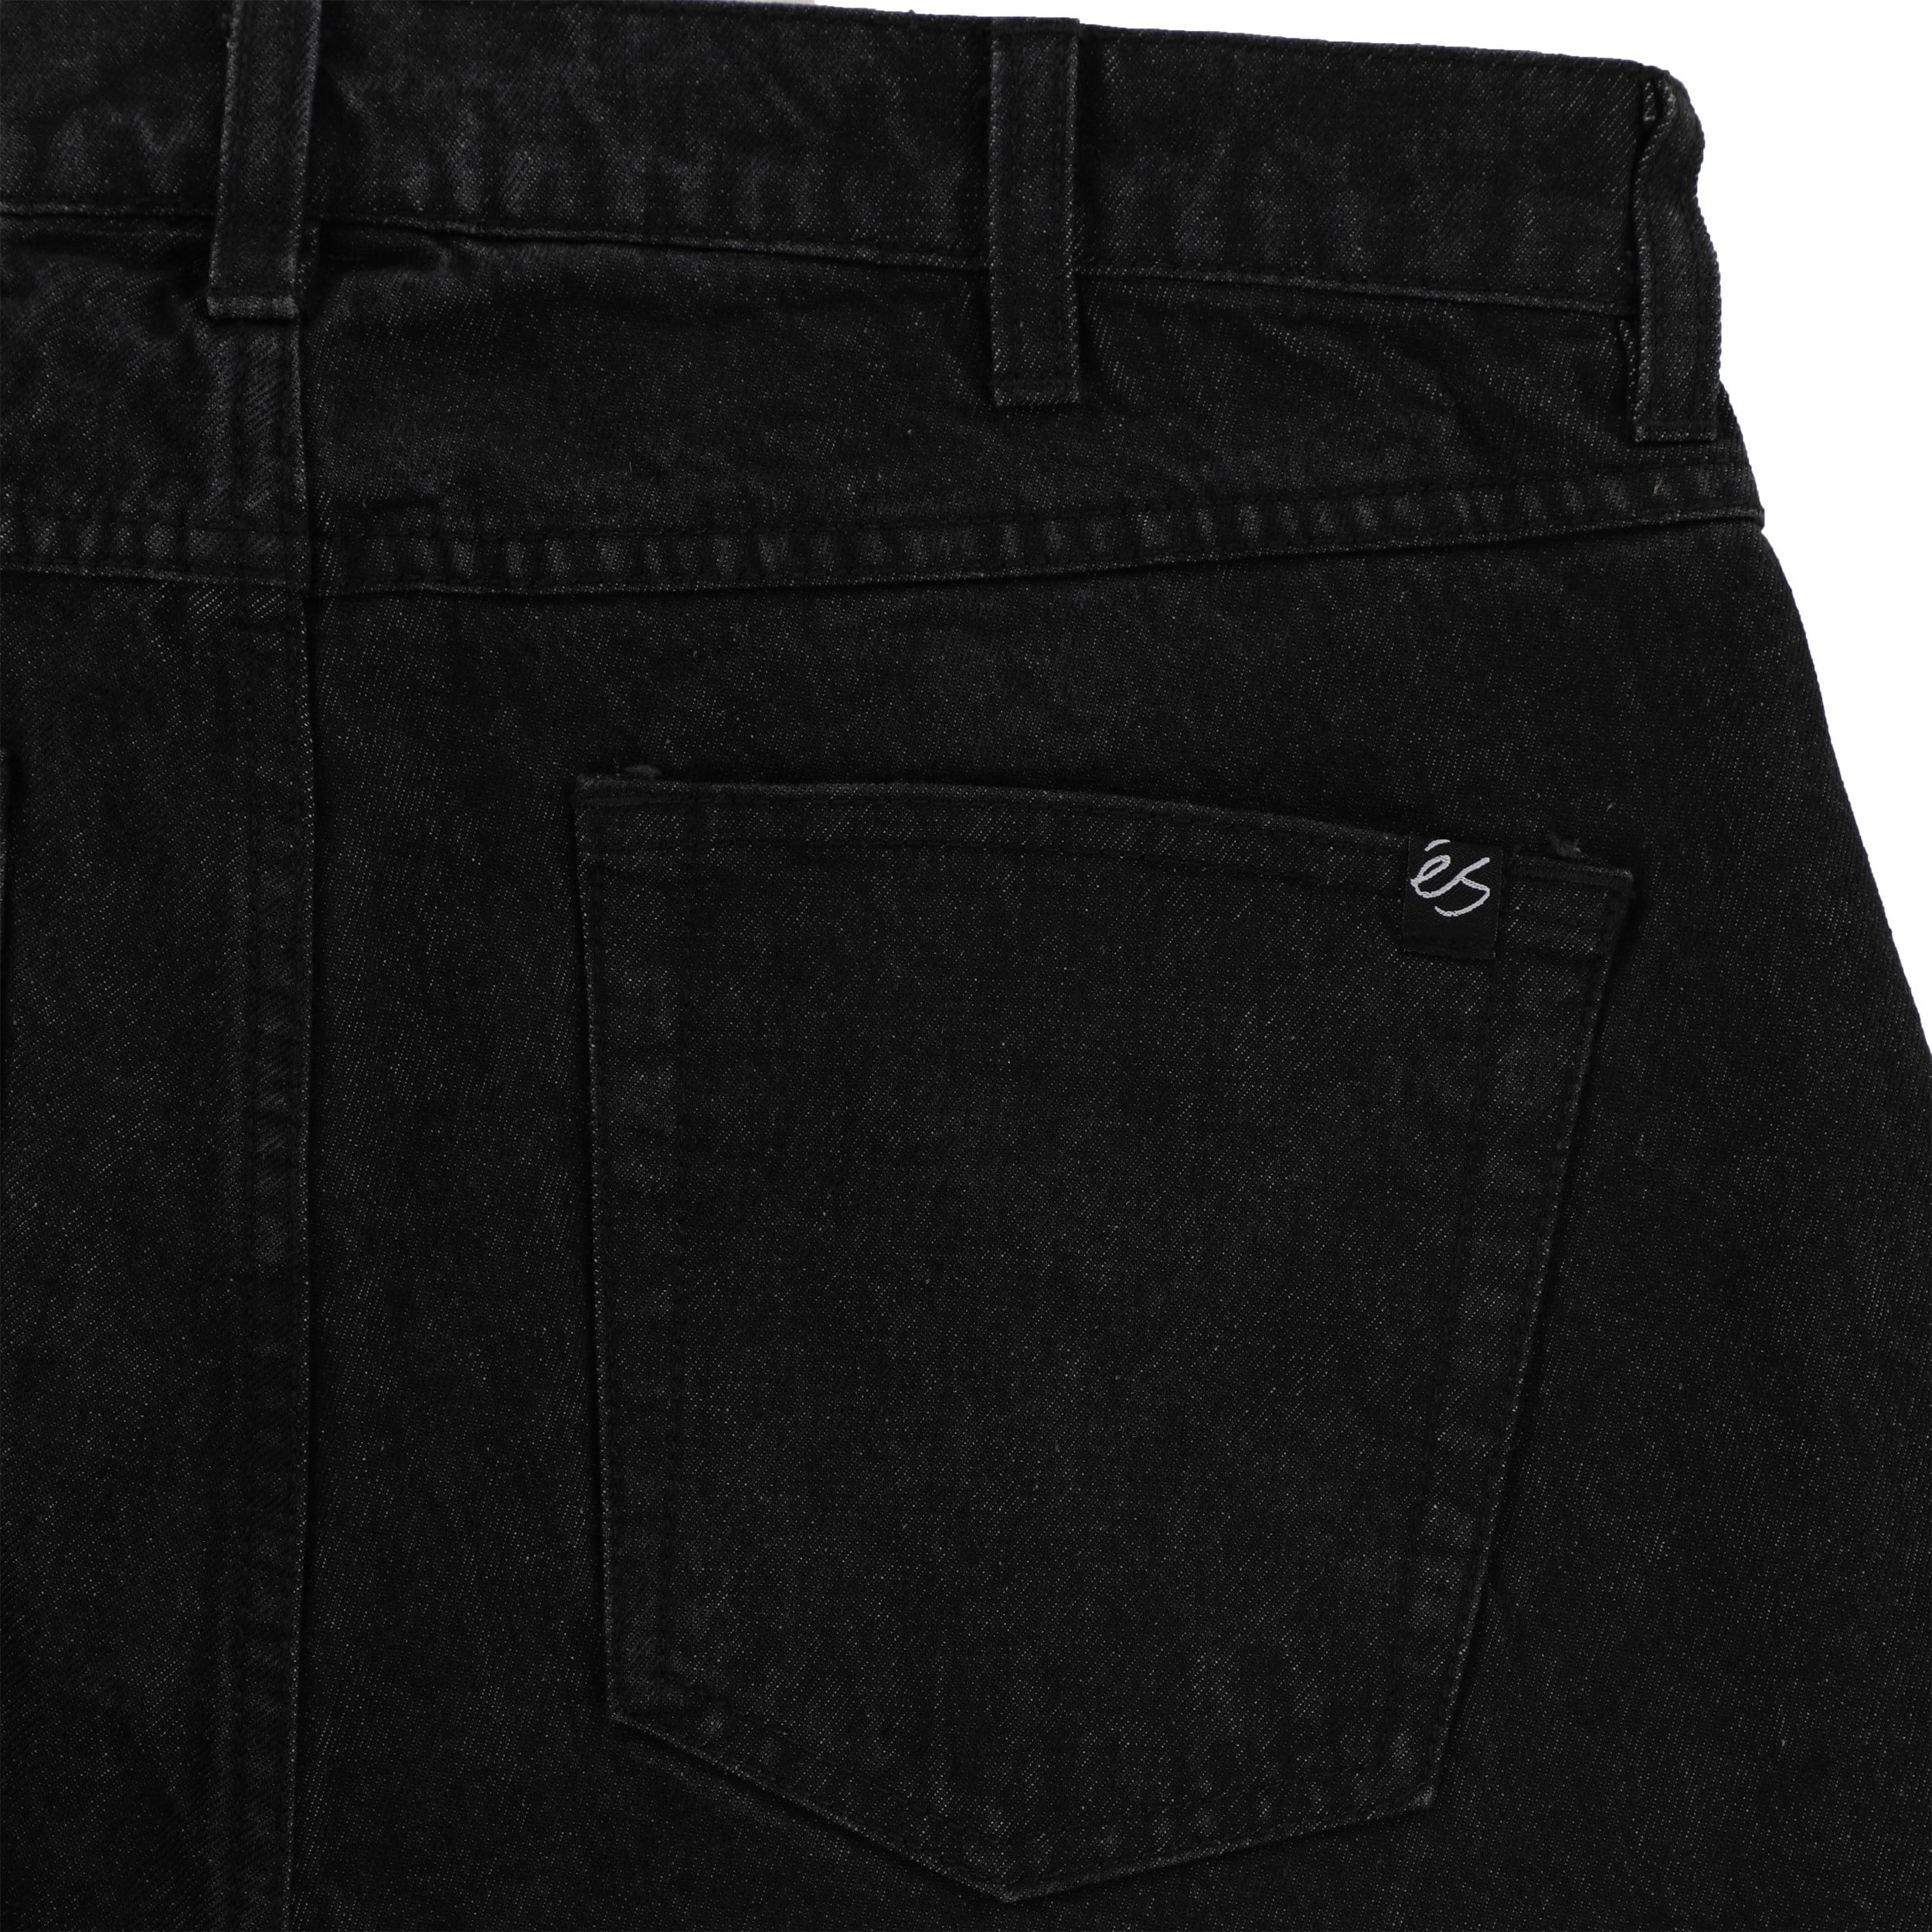 eS Baggy Denim Jeans - black wash | Tactics